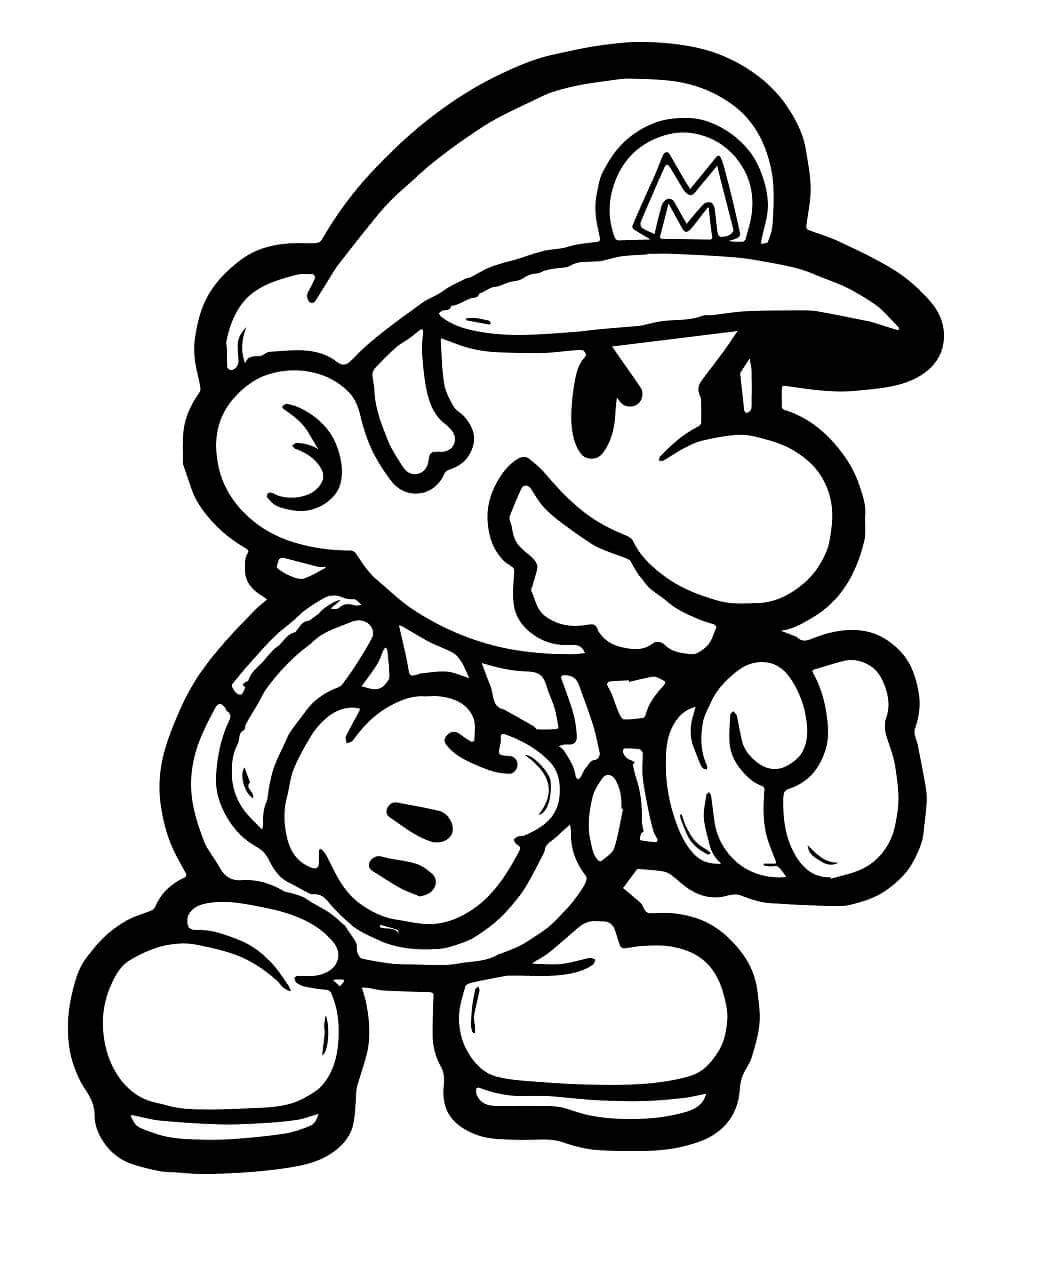 Mario Boxe coloring page